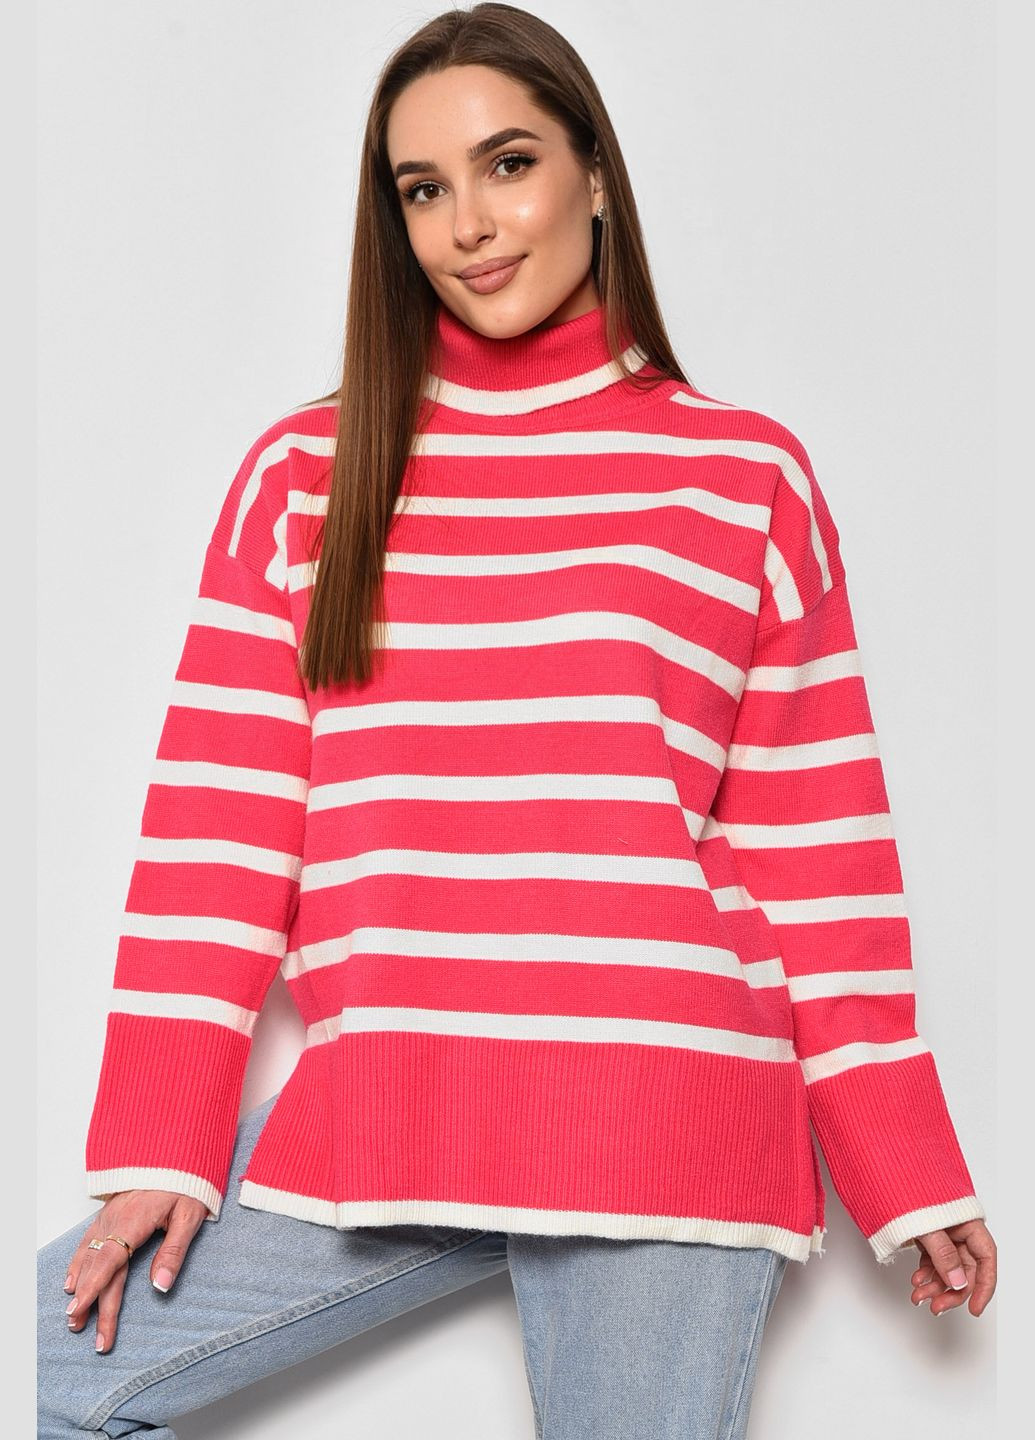 Розовый зимний свитер женский полубатальный в полоску розово-белого цвета пуловер Let's Shop